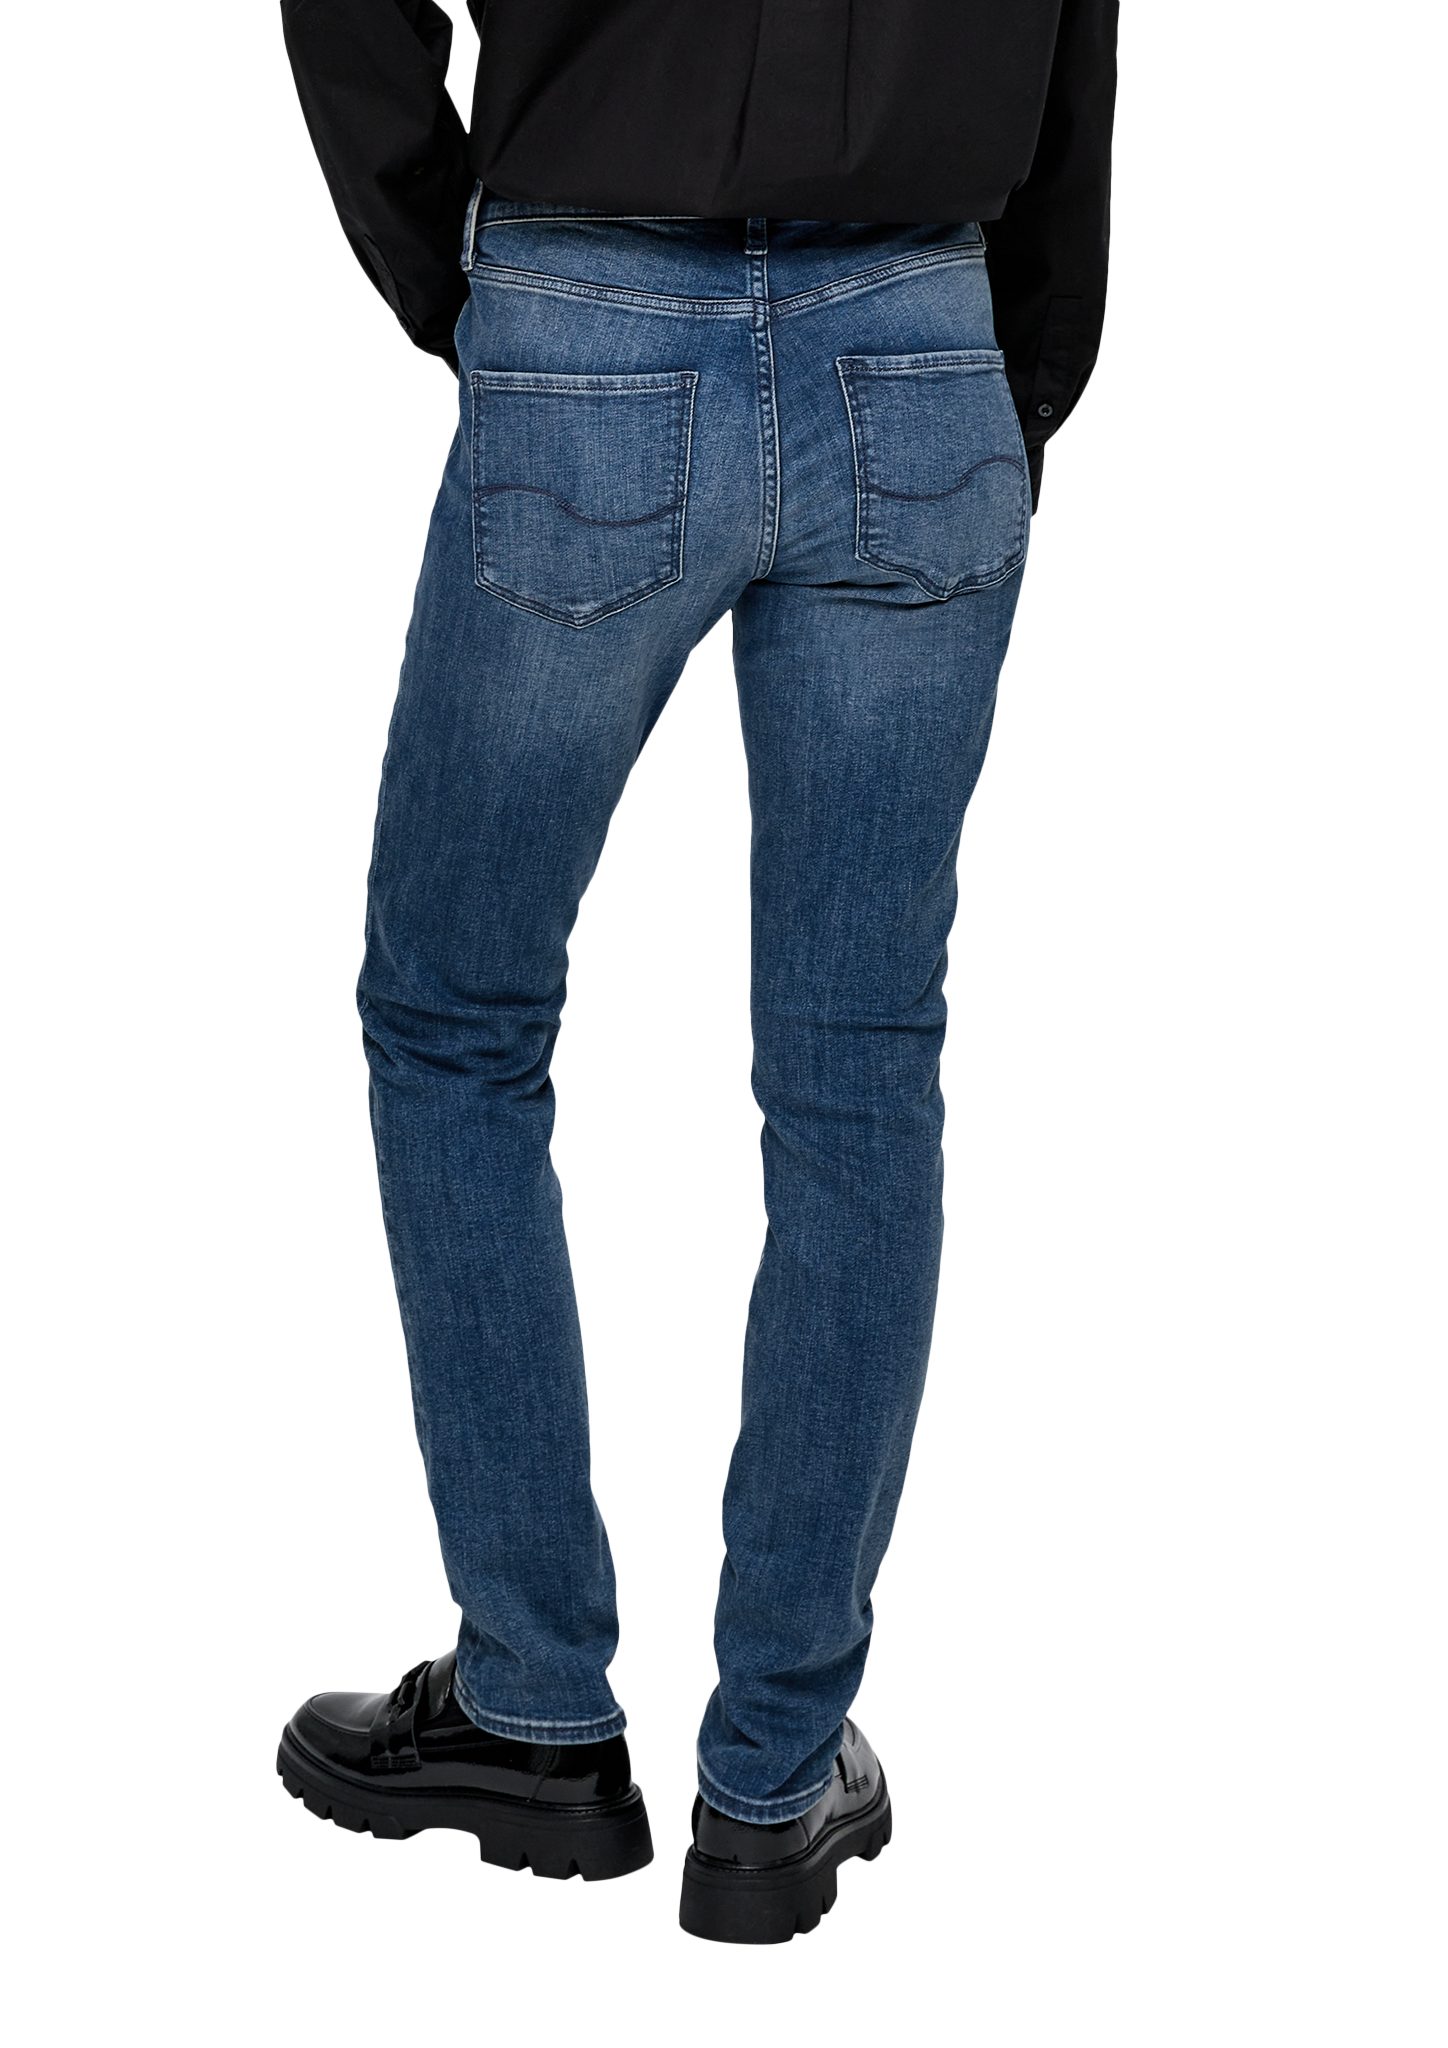 Leg QS Mid Jeans Fit / Label-Patch / / Slim Catie Rise blau Stoffhose Slim